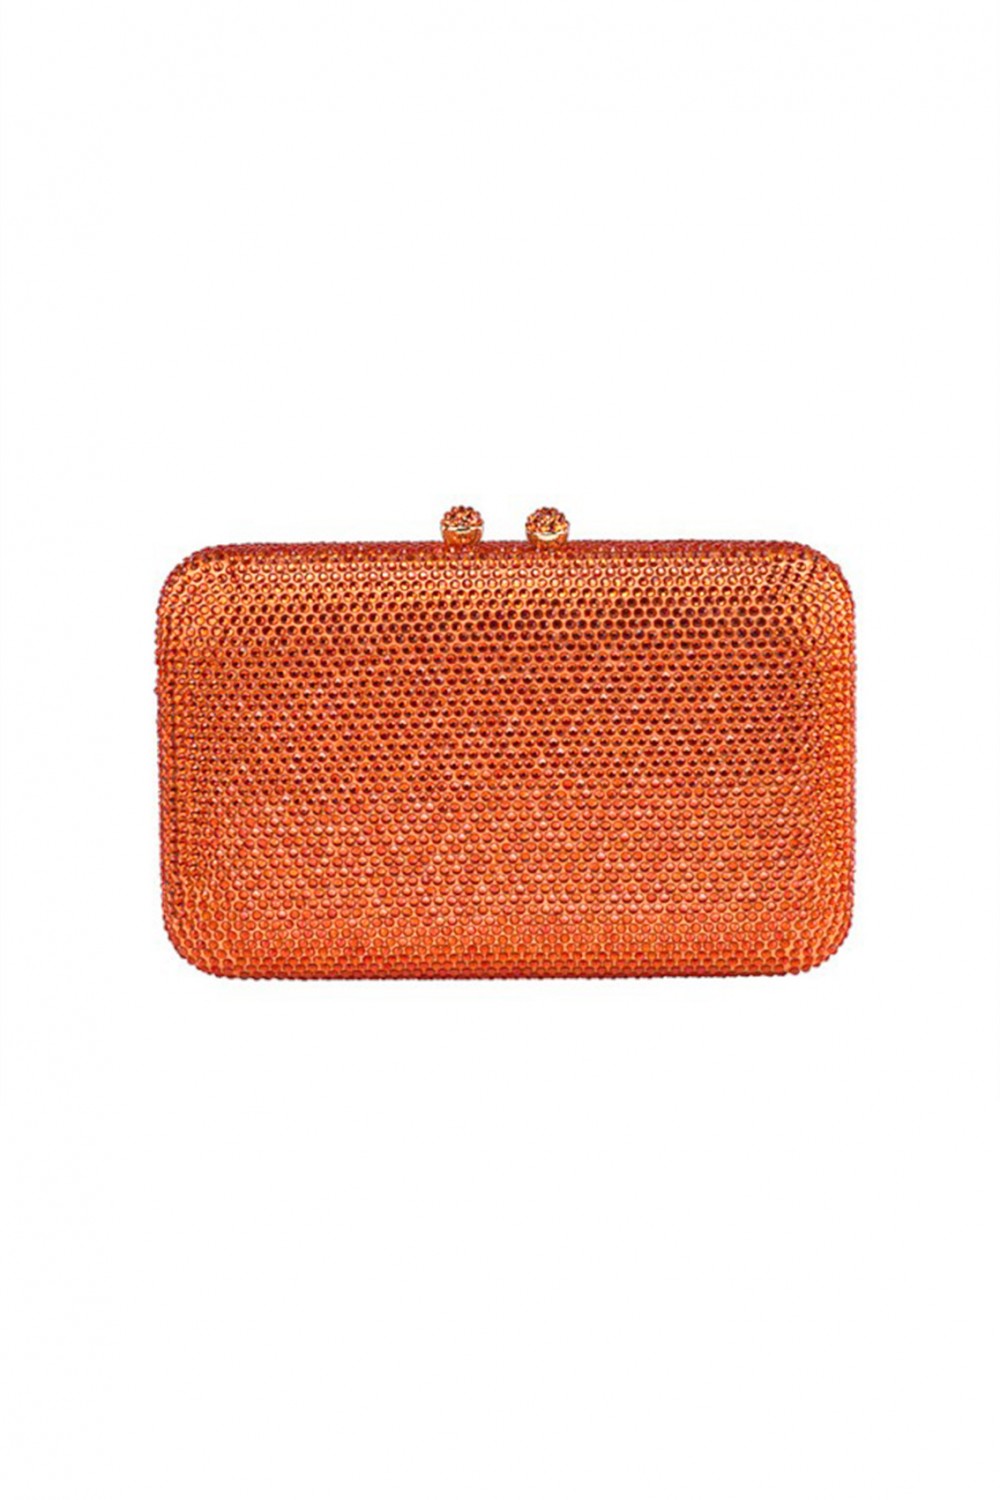 Orange Swarovski clutch